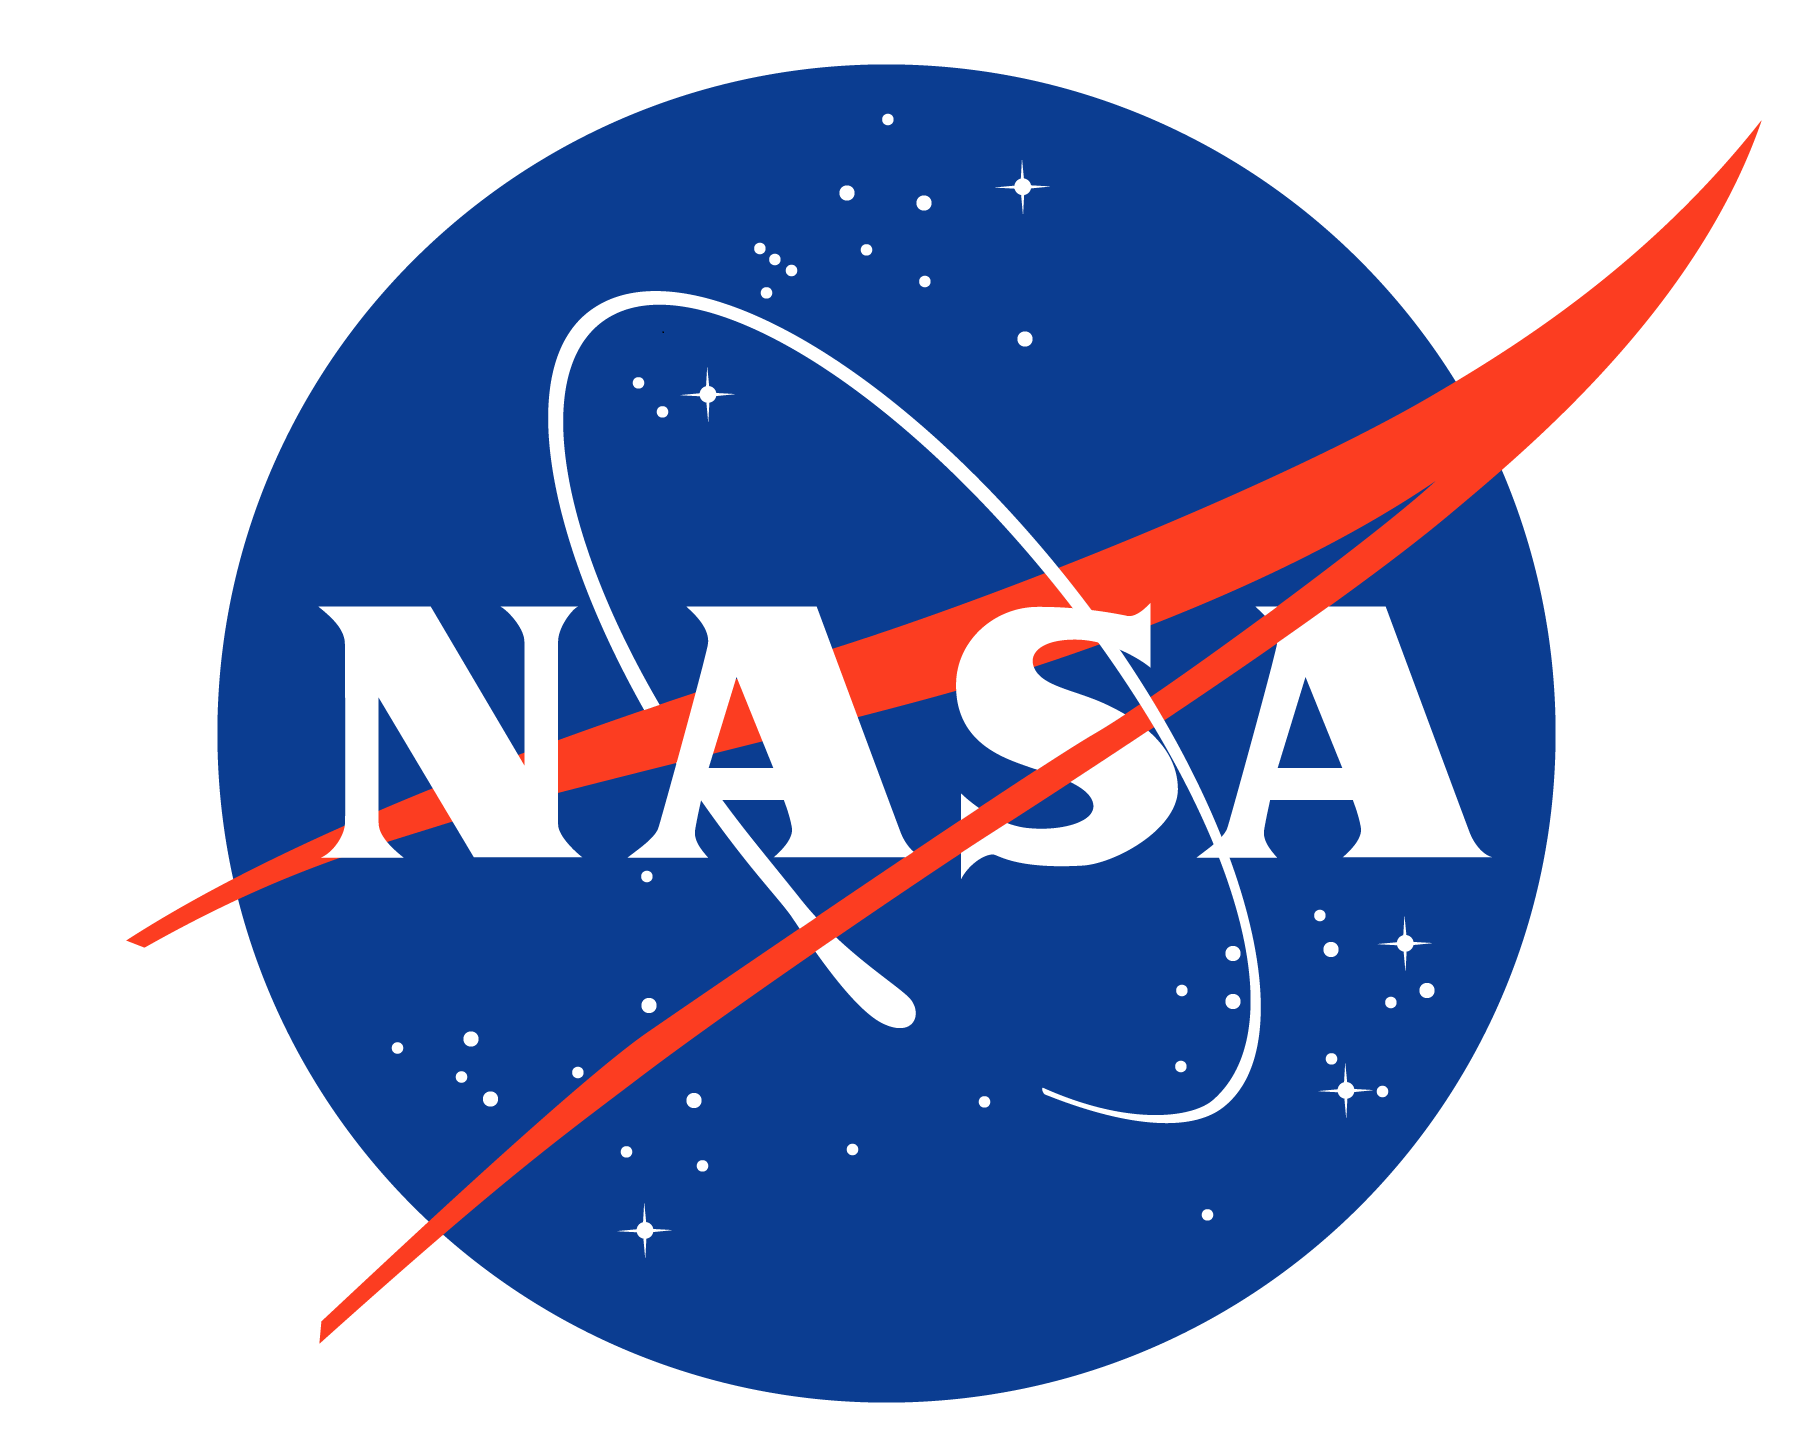 astronaut usa symbols